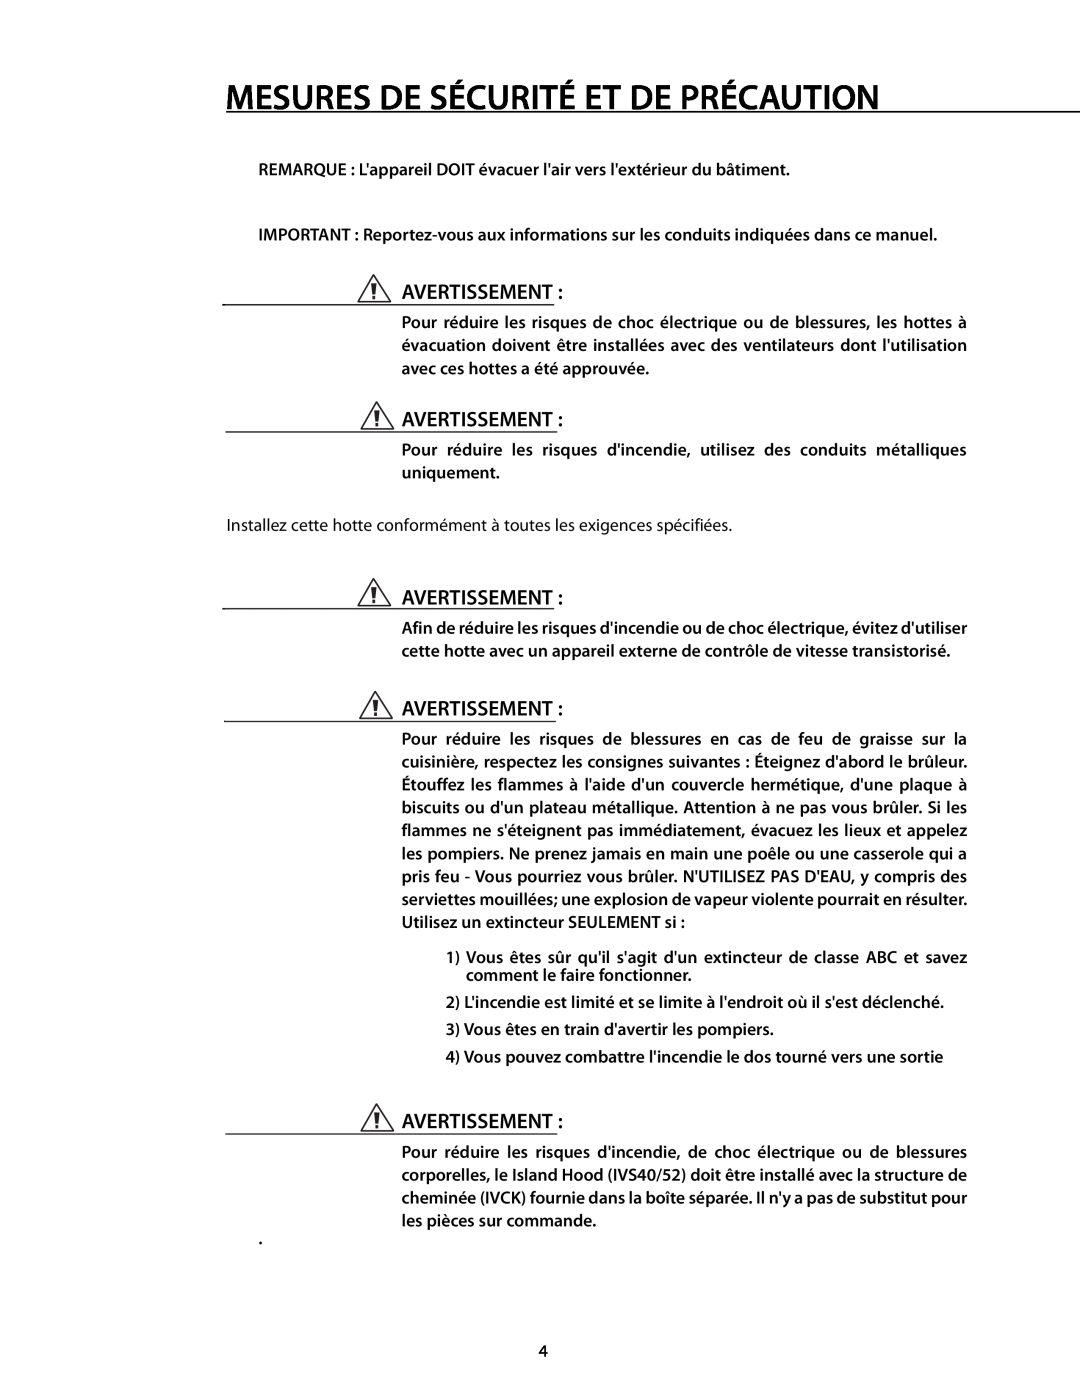 DCS 221712 manual Mesures De Sécurité Et De Précaution, Avertissement 